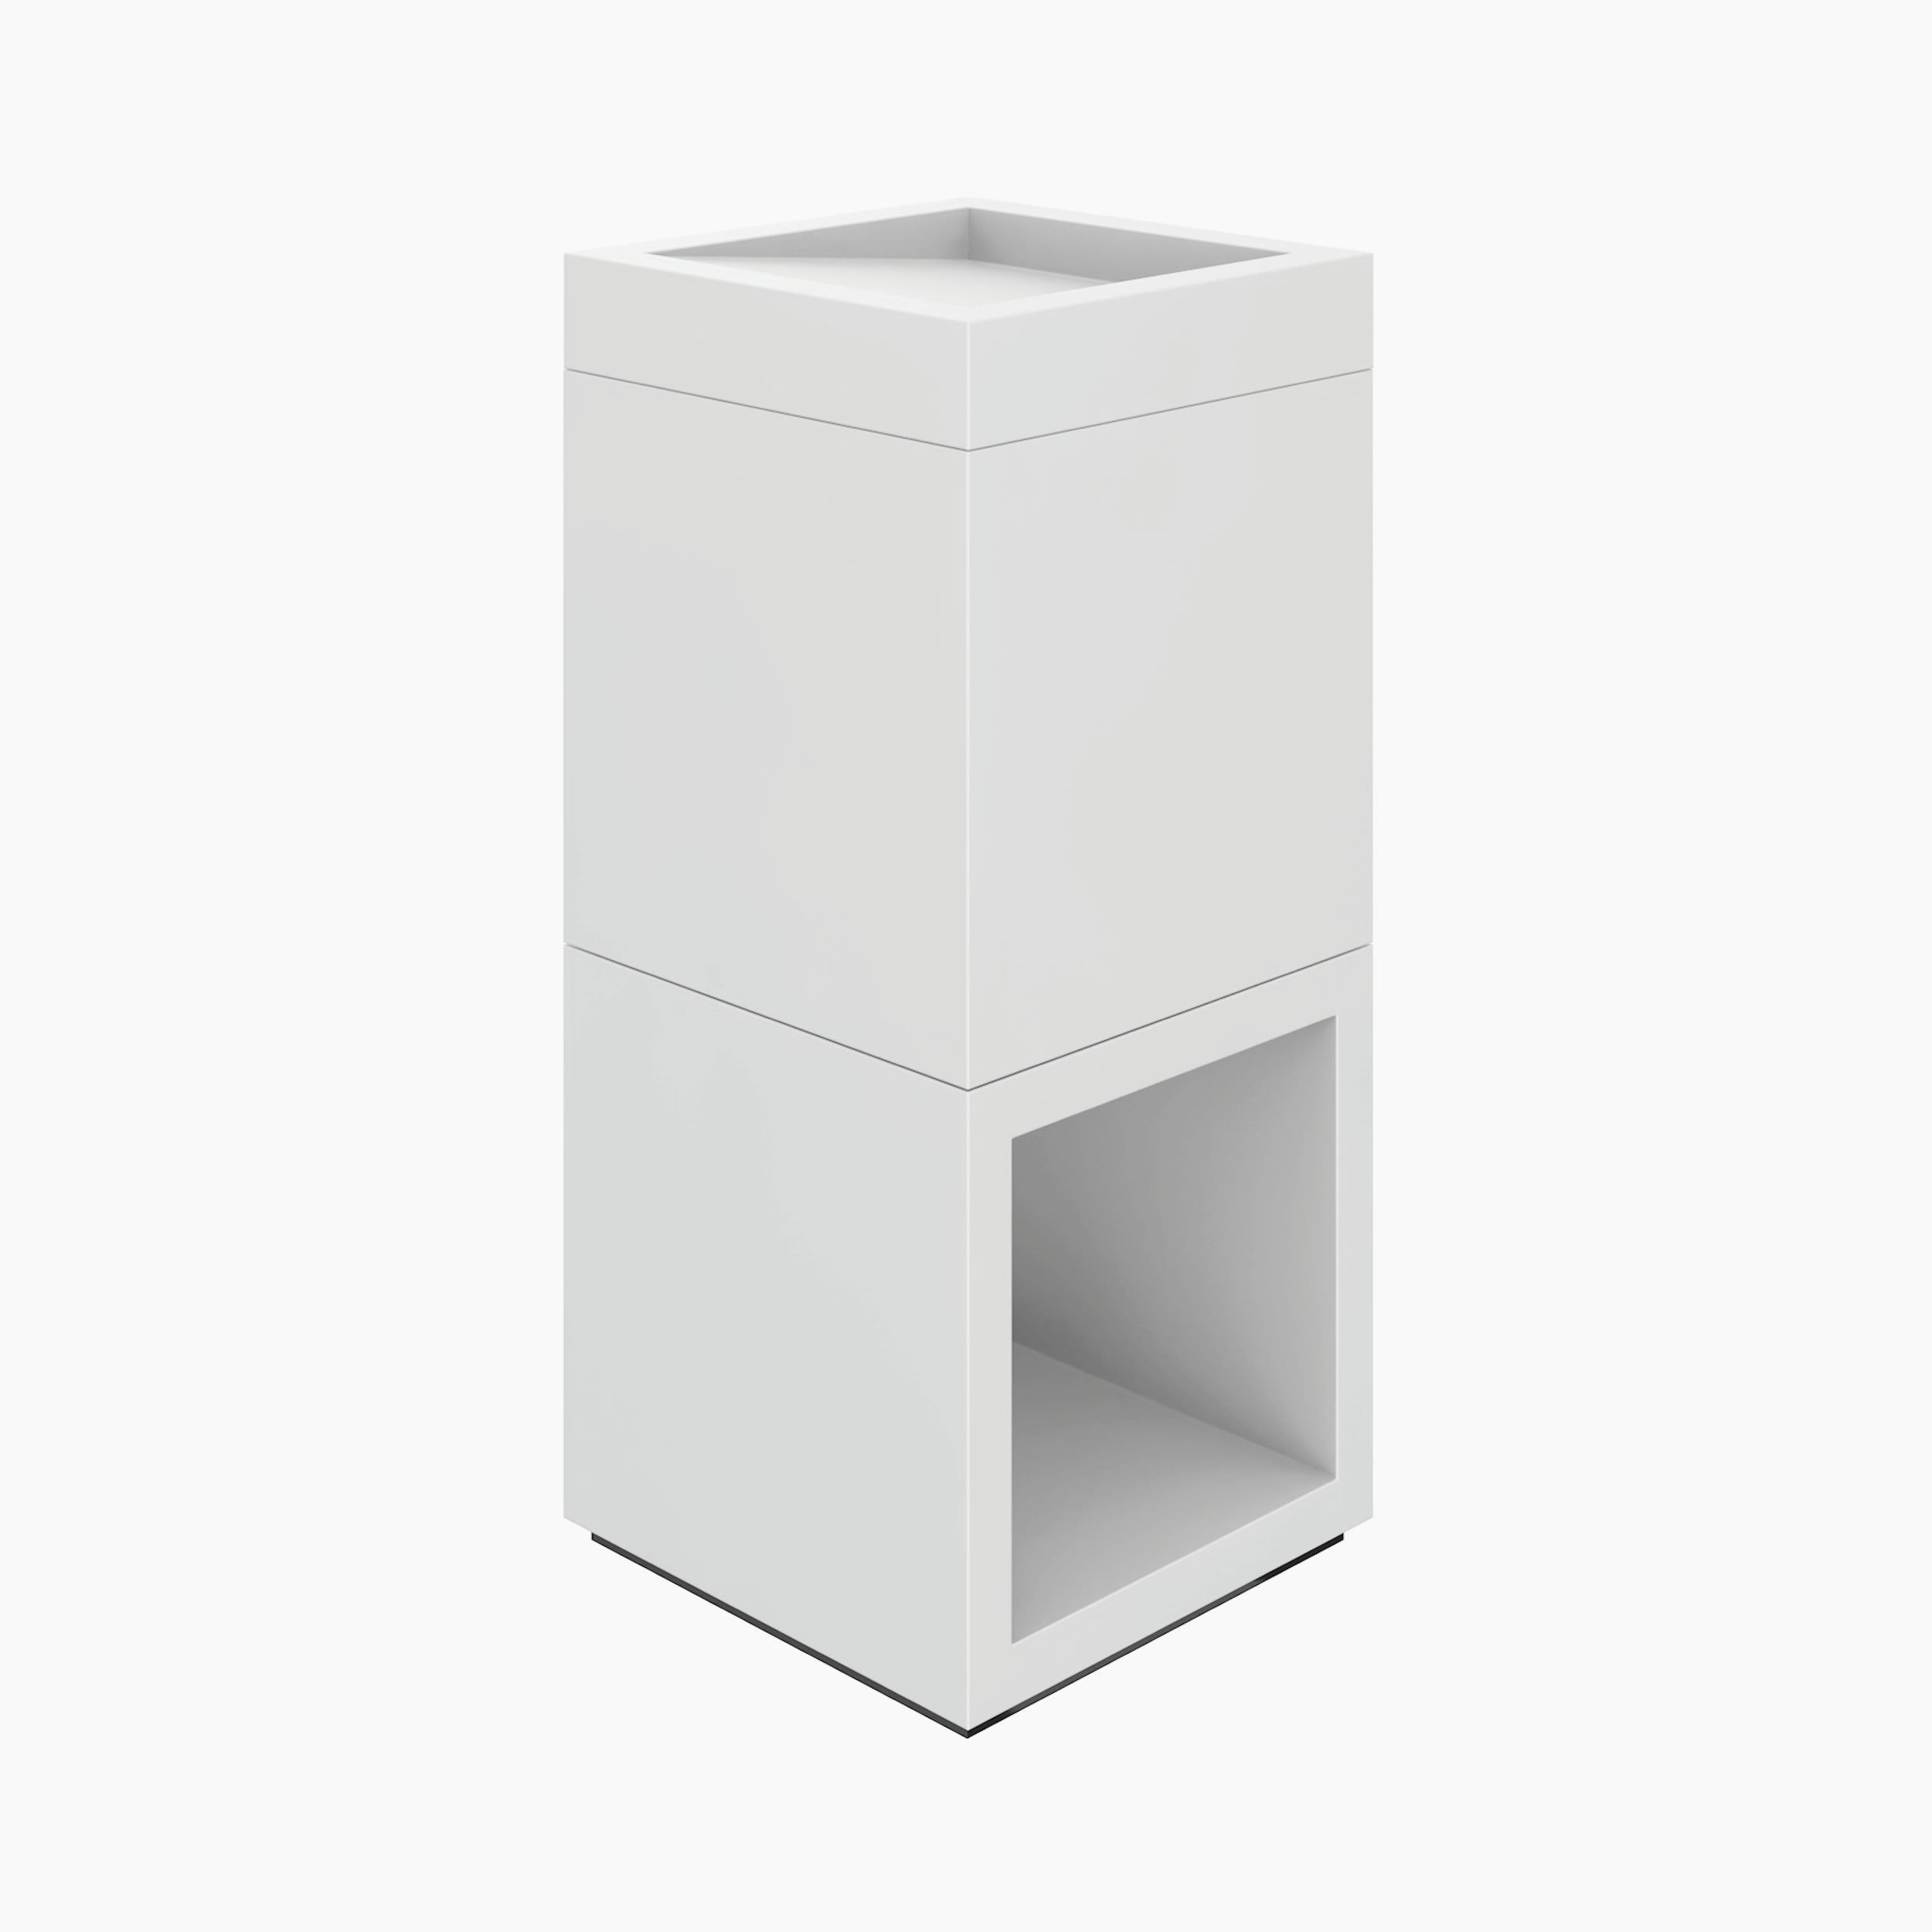 Rednerpult wuerfel weiss functional art Buero minimalist furniture Stelen FS 43 FELIX SCHWAKE